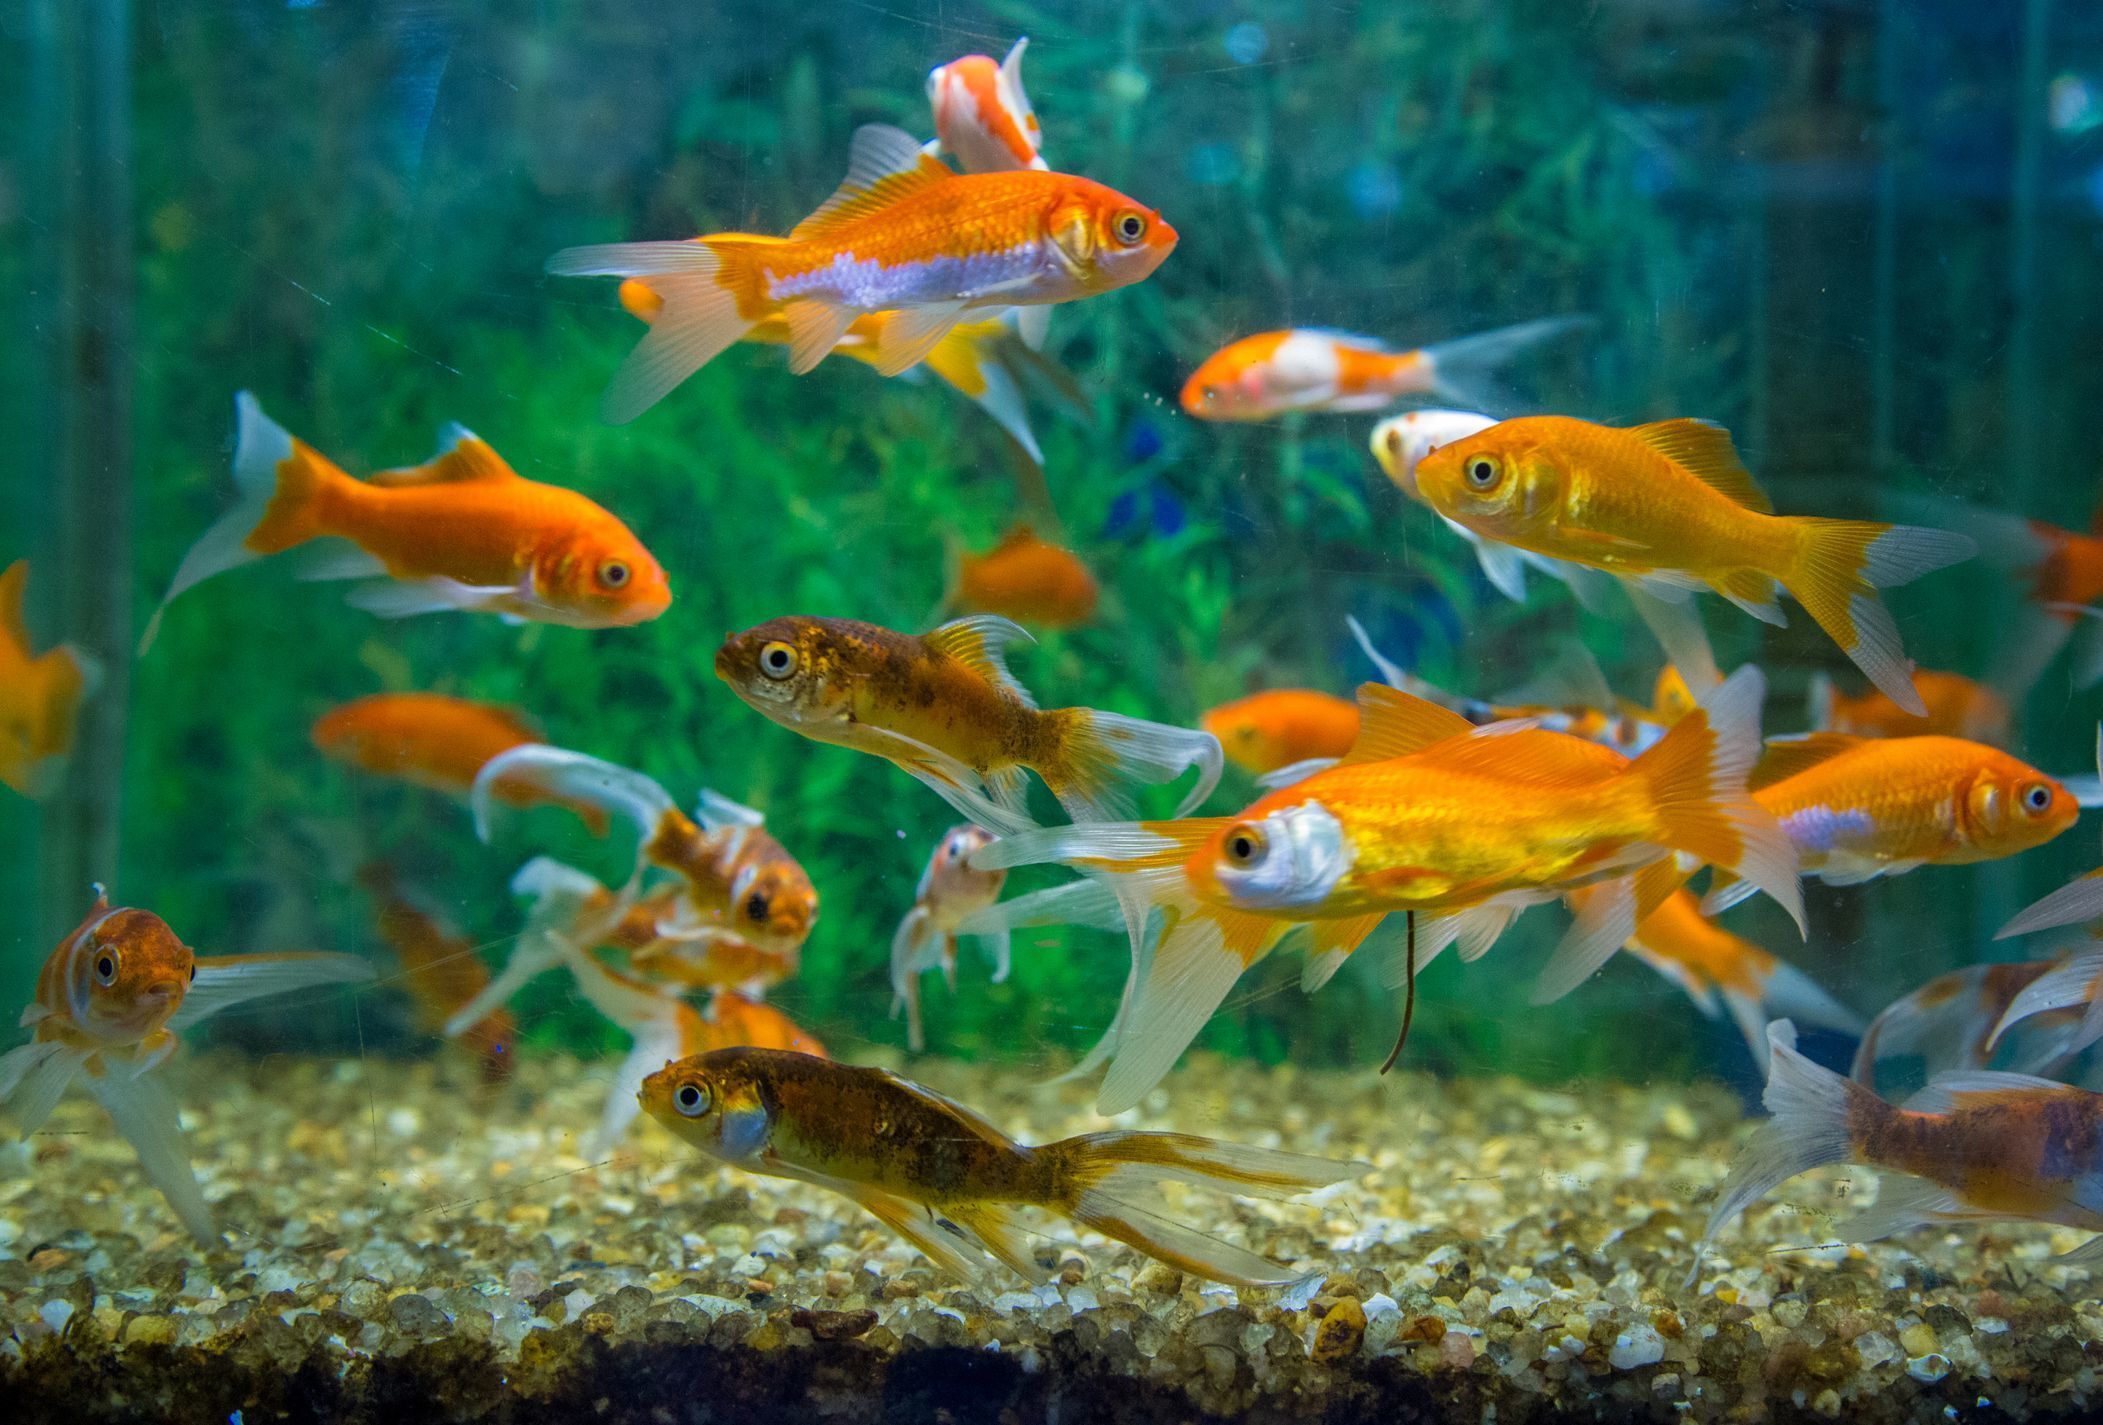 Fish Aquarium Vastu : जानें- किस दिशा में रखें फिश एक्वेरियम, तभी मिलेंगे ये फायदे